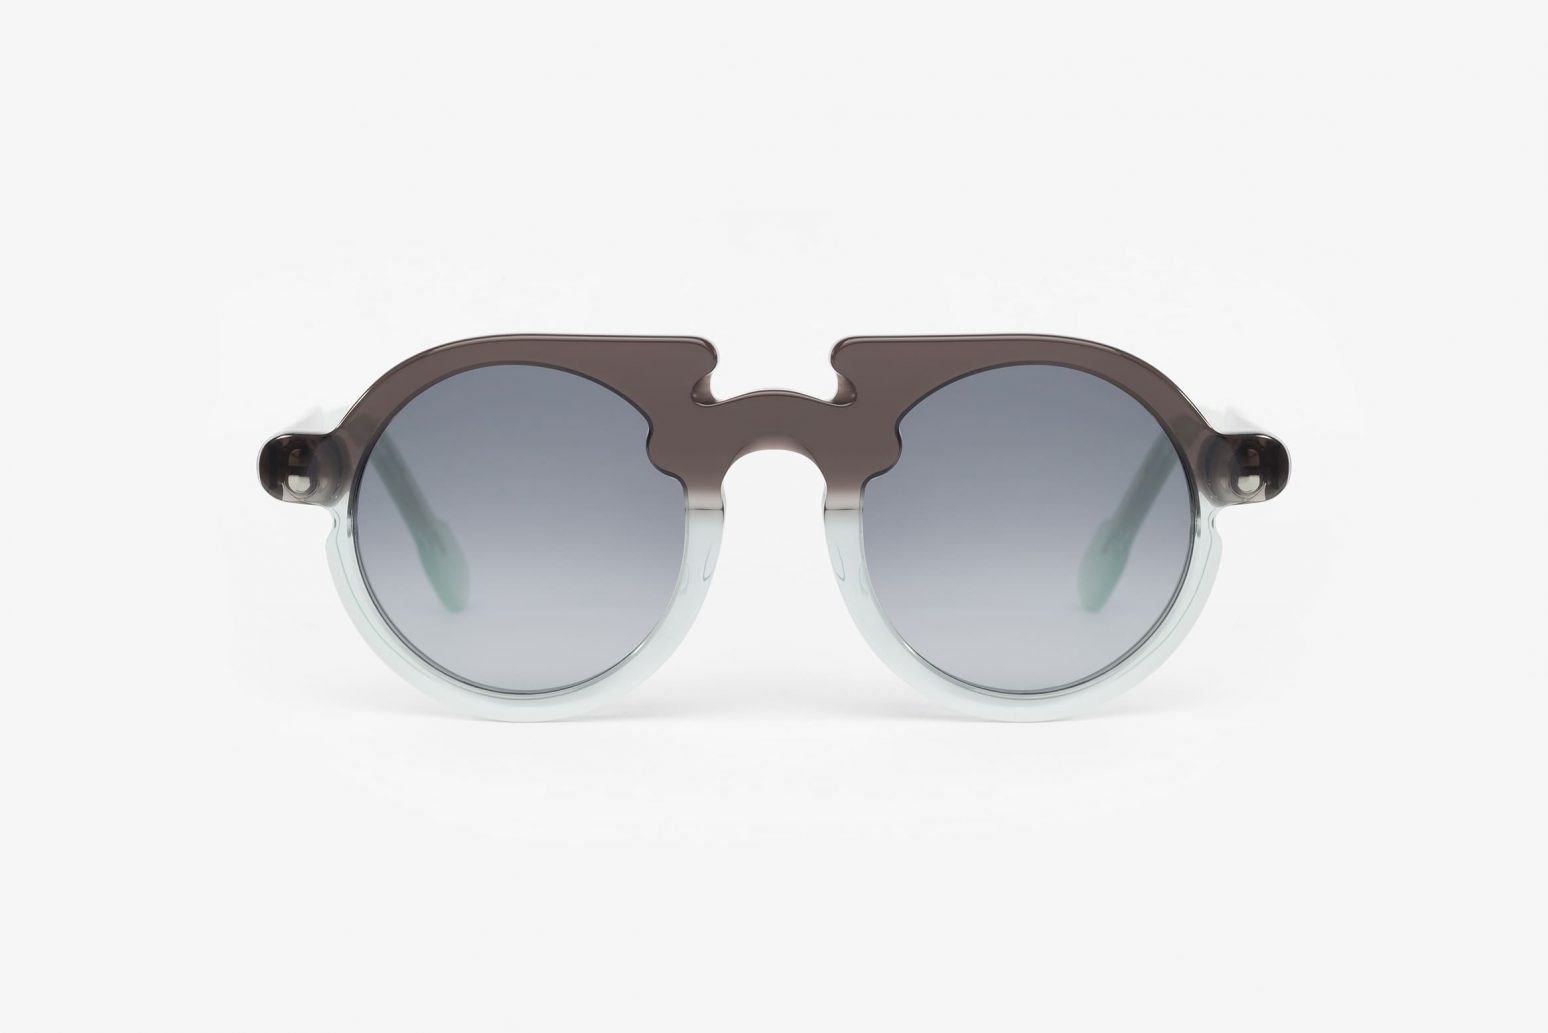 Sunglasses Flavin by Portrait Eyewear - Óptica Gran Vía Barcelona